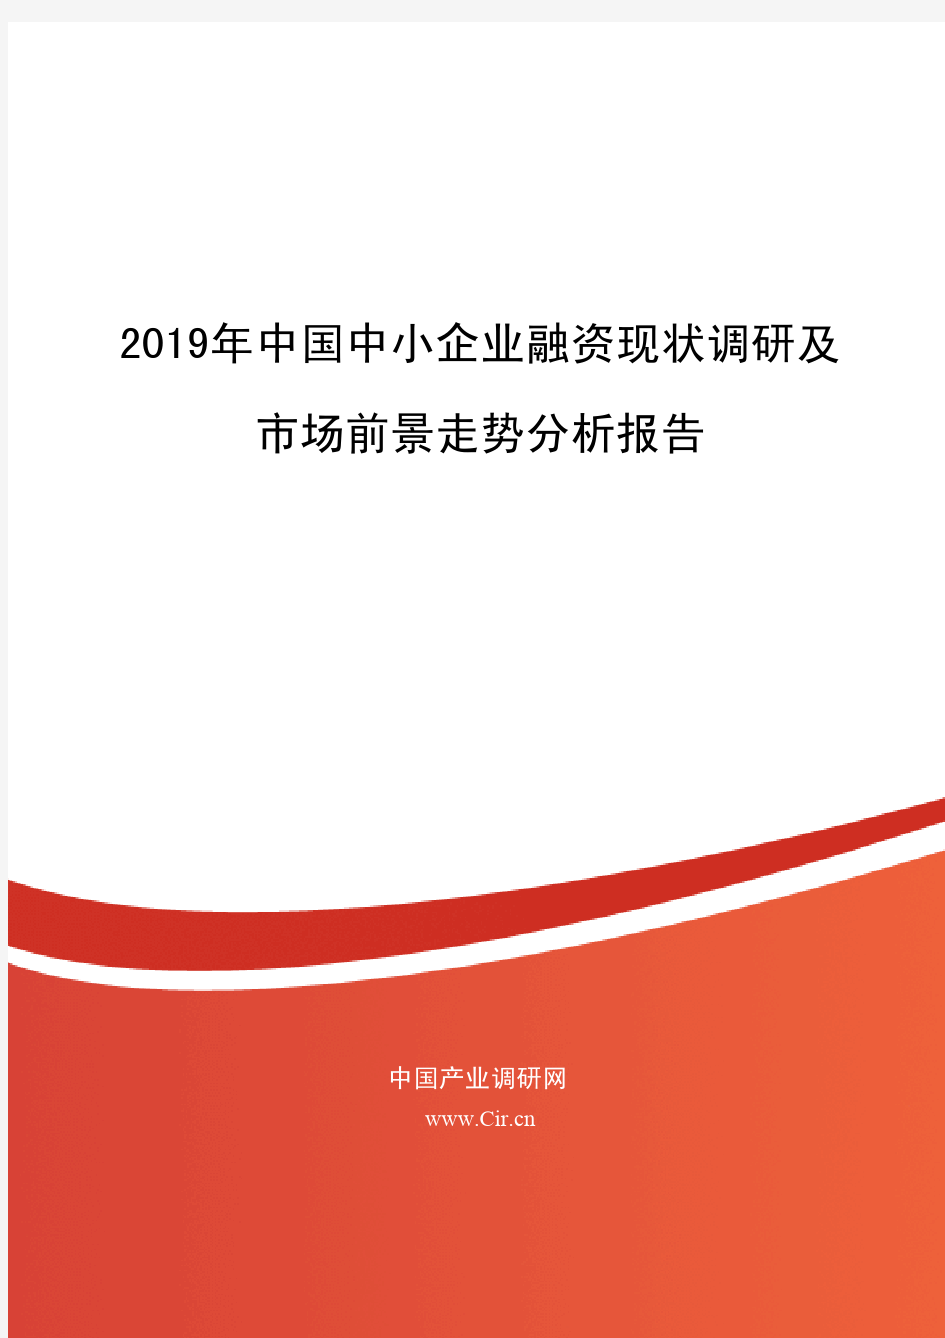 2019年中国中小企业融资现状调研及